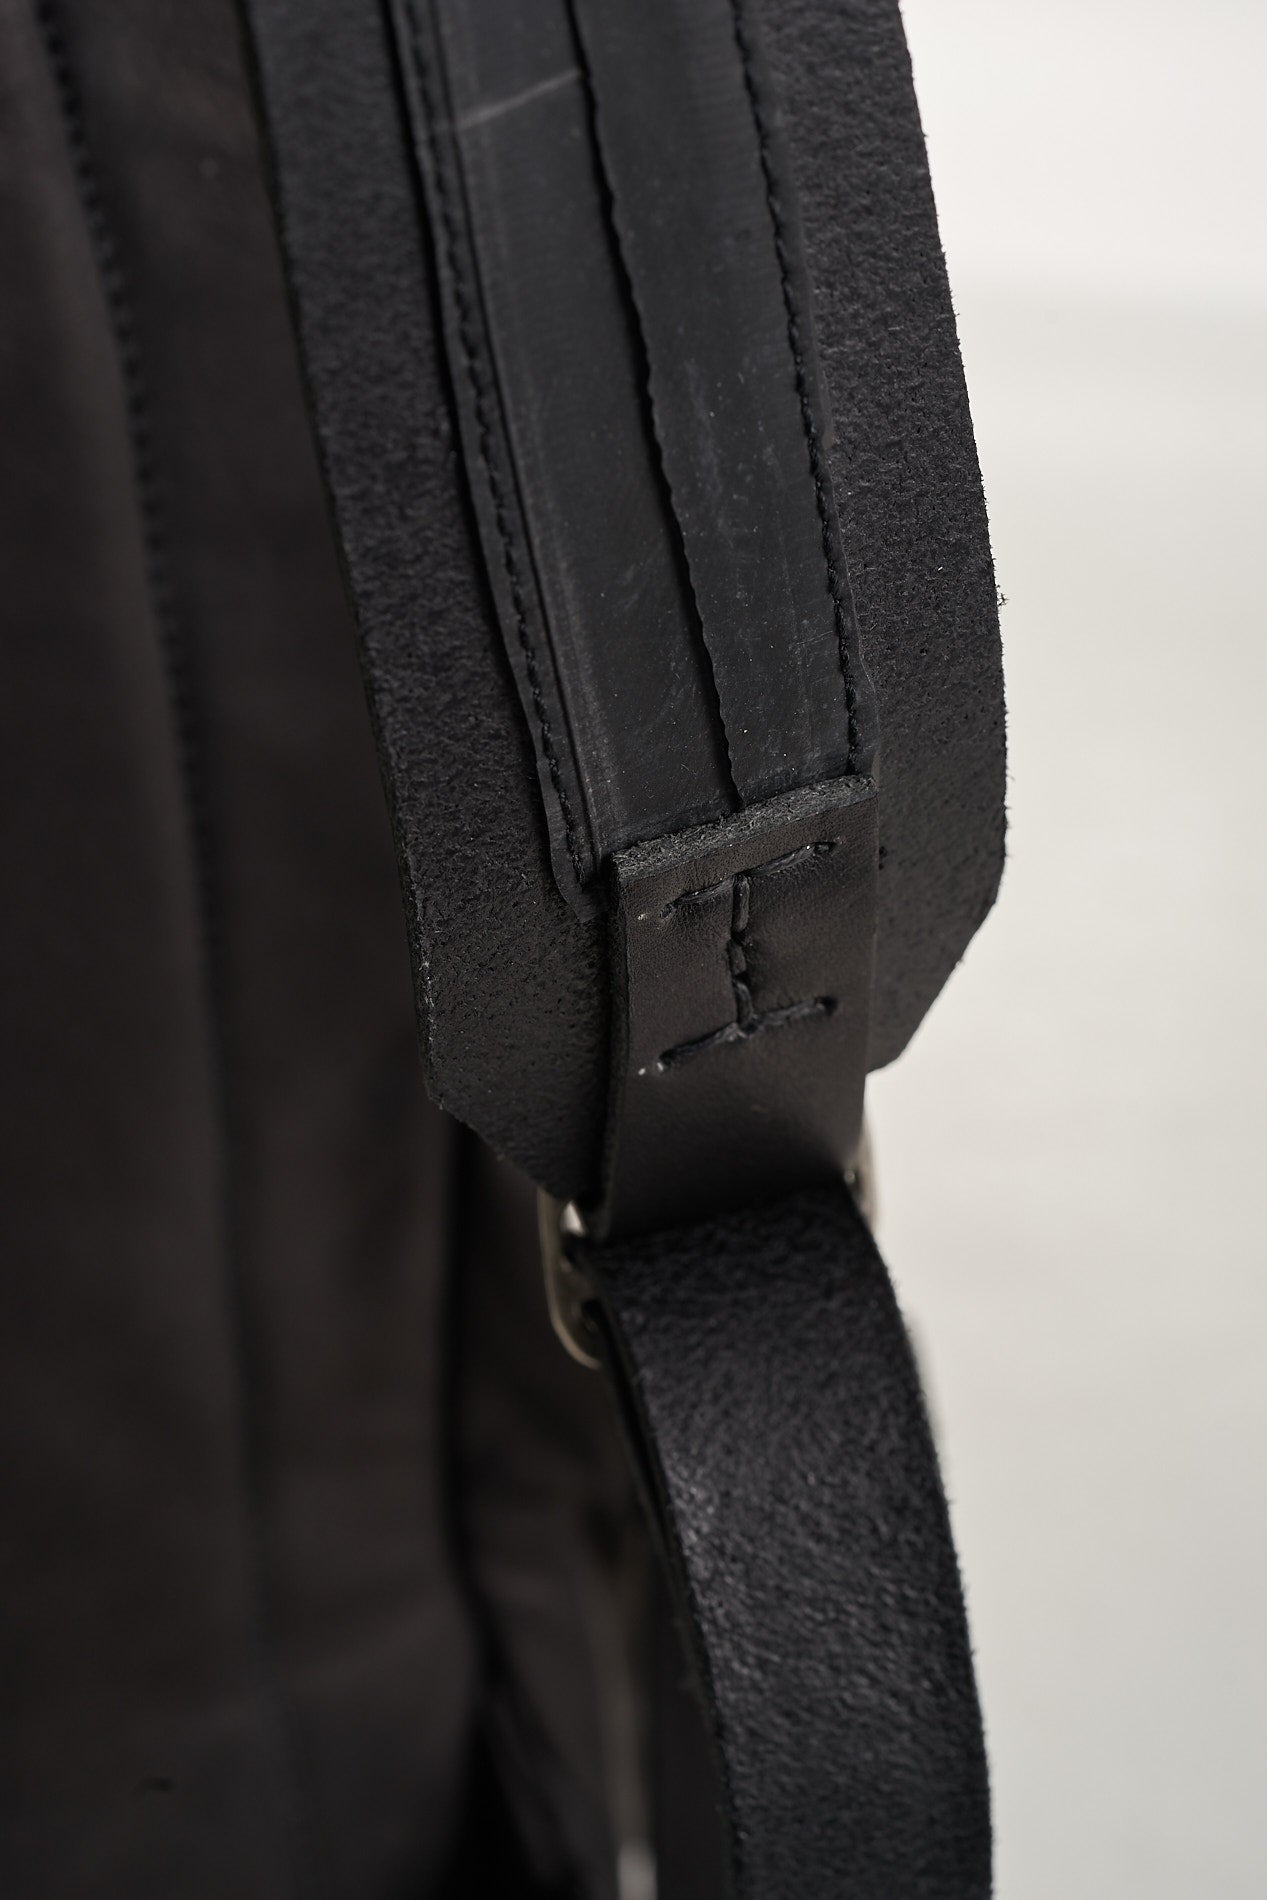 Black Vegetable Dye Calf Leather BOBO GR Medium Backpack